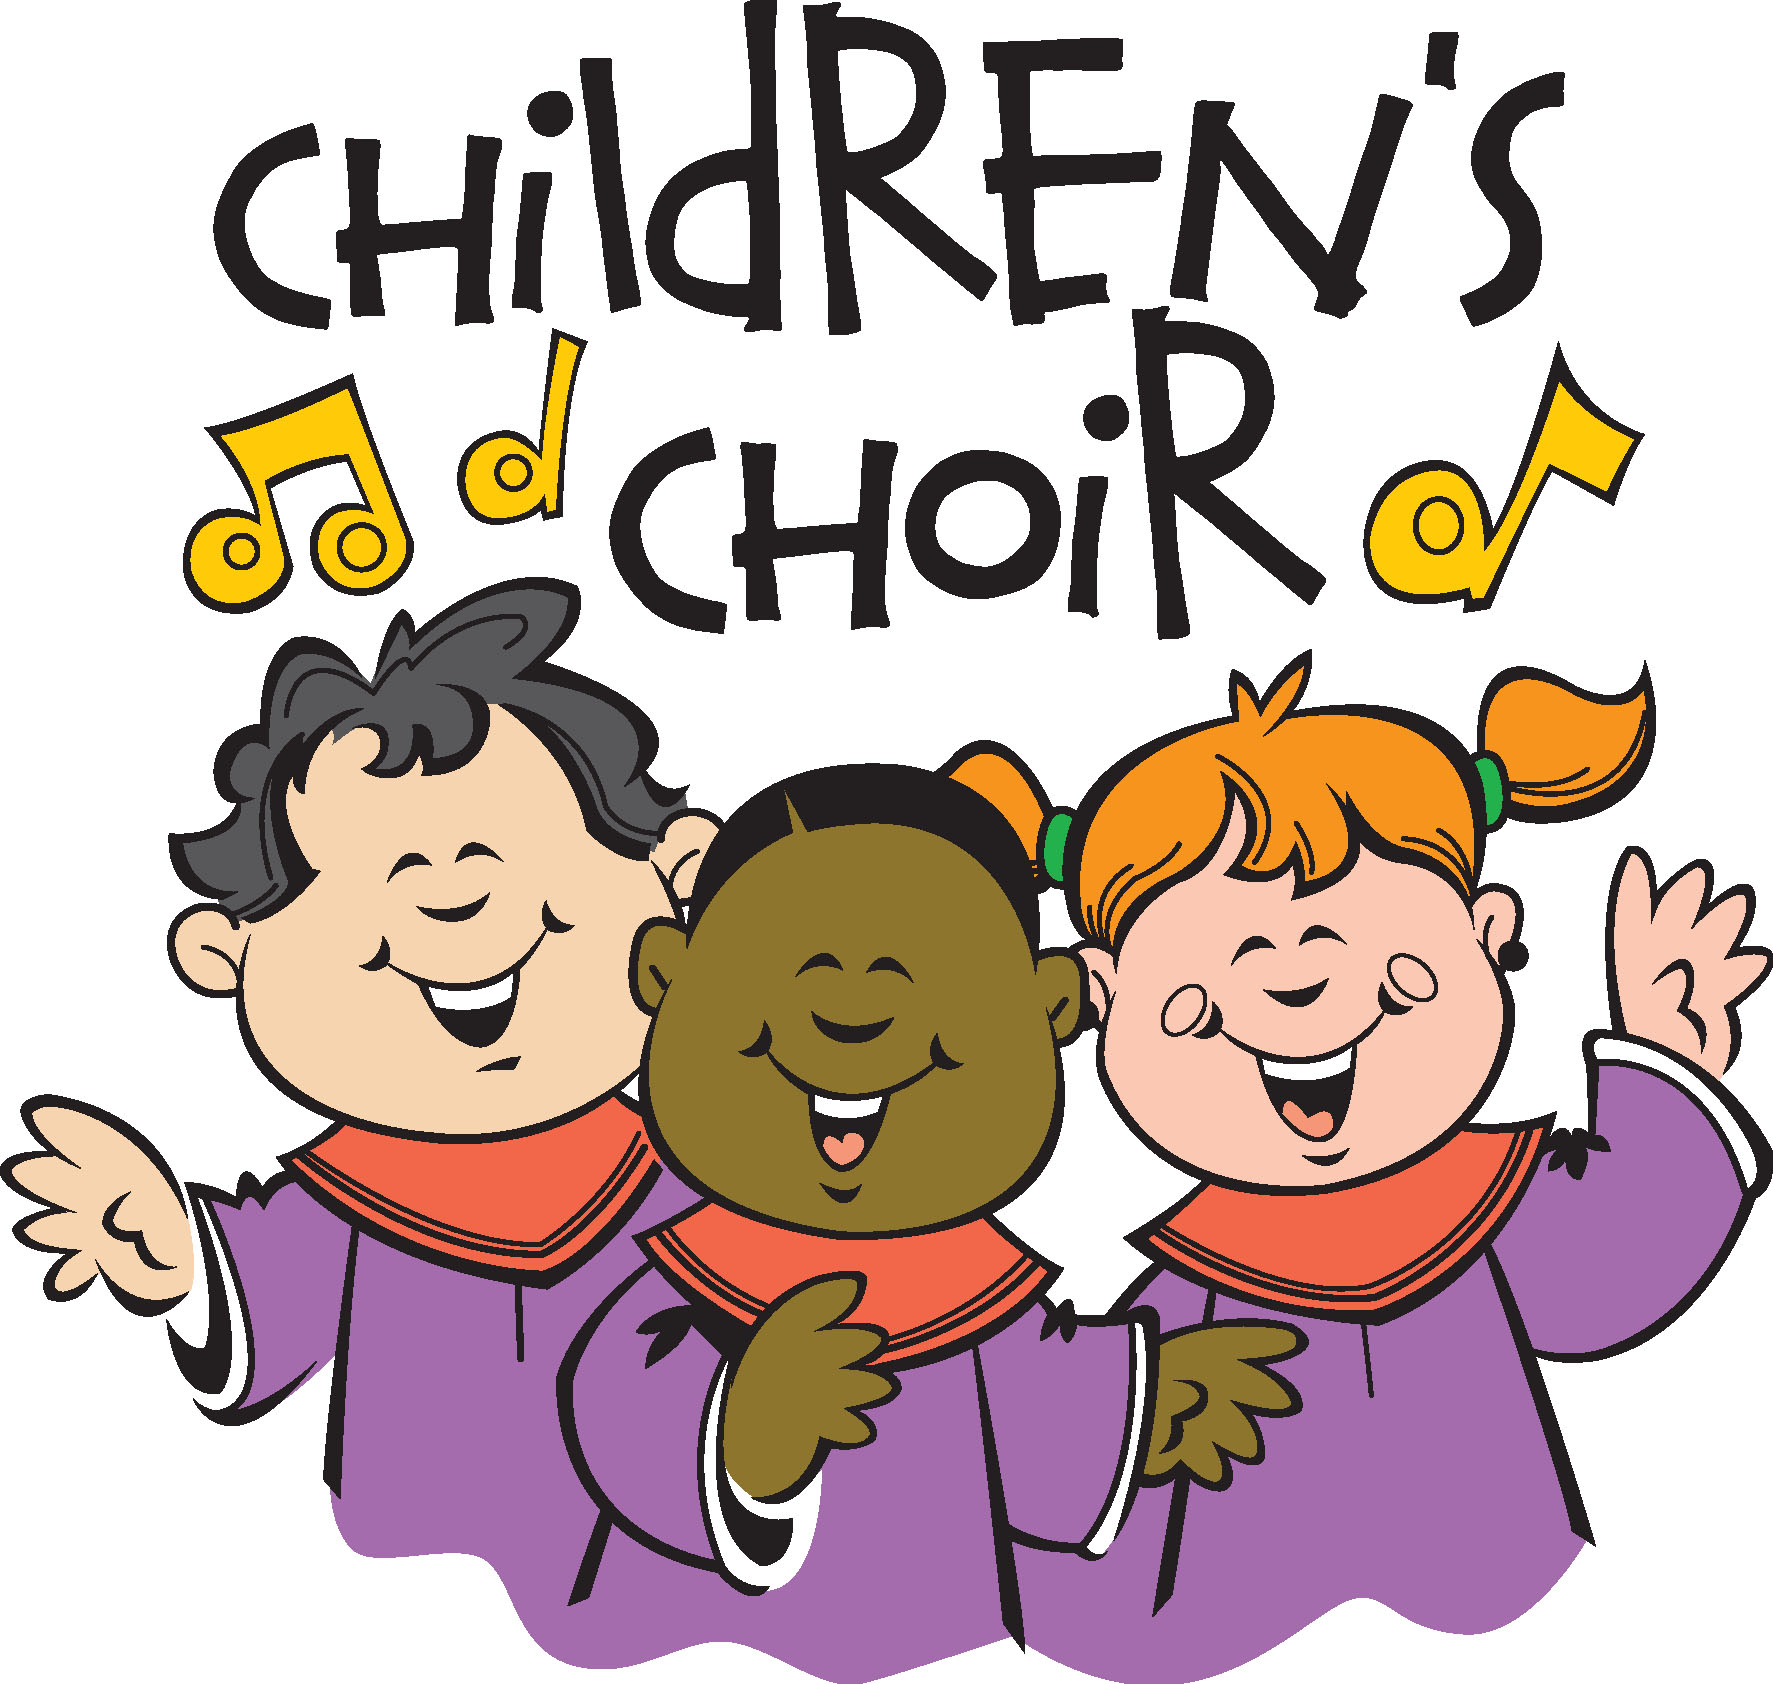 Children choir clip art site about children